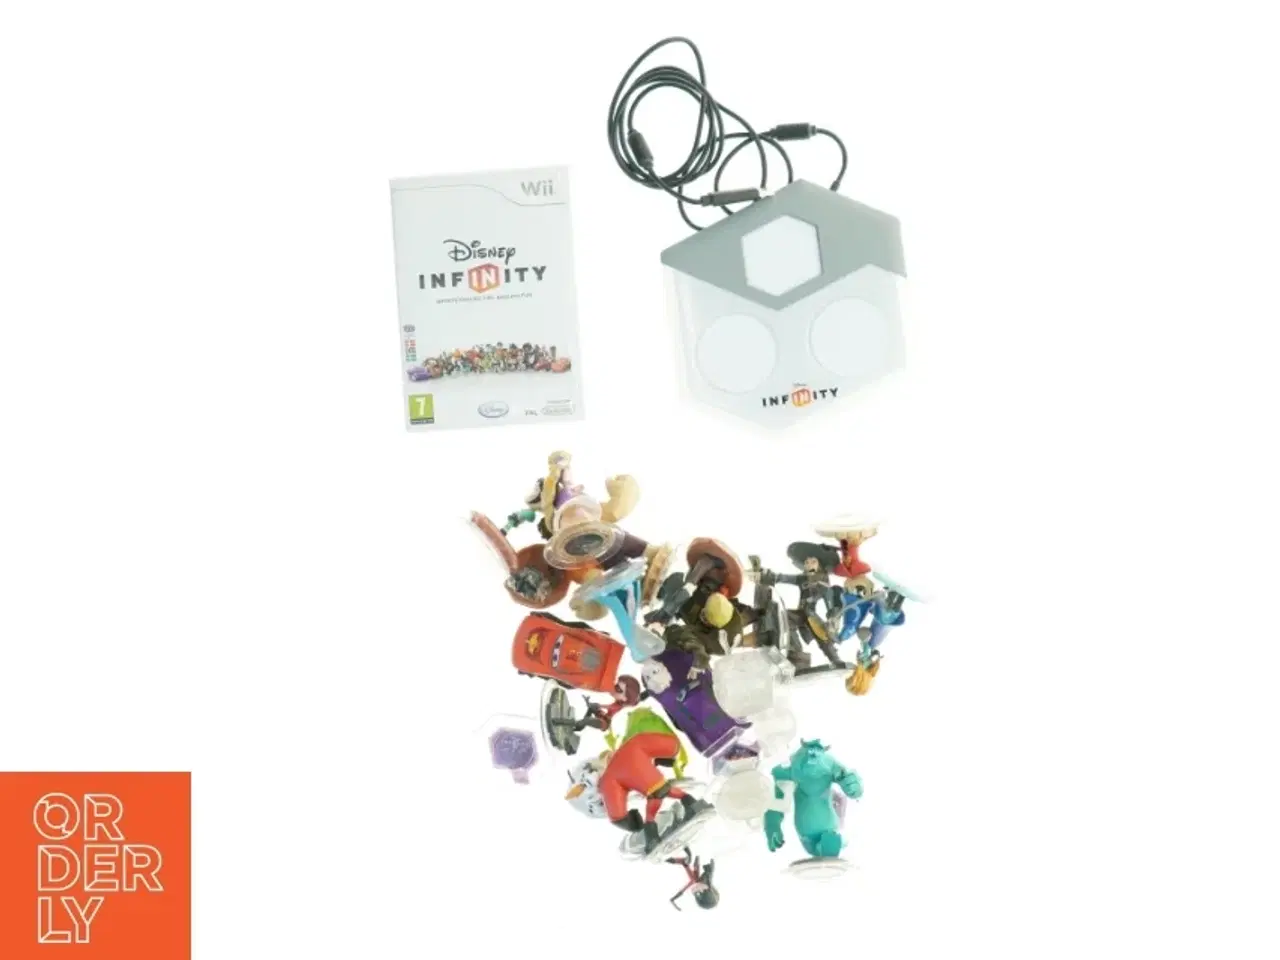 Billede 1 - Disney Infinity Figurer og Spil til Wii fra Wii (str. 30 x 23 cm)